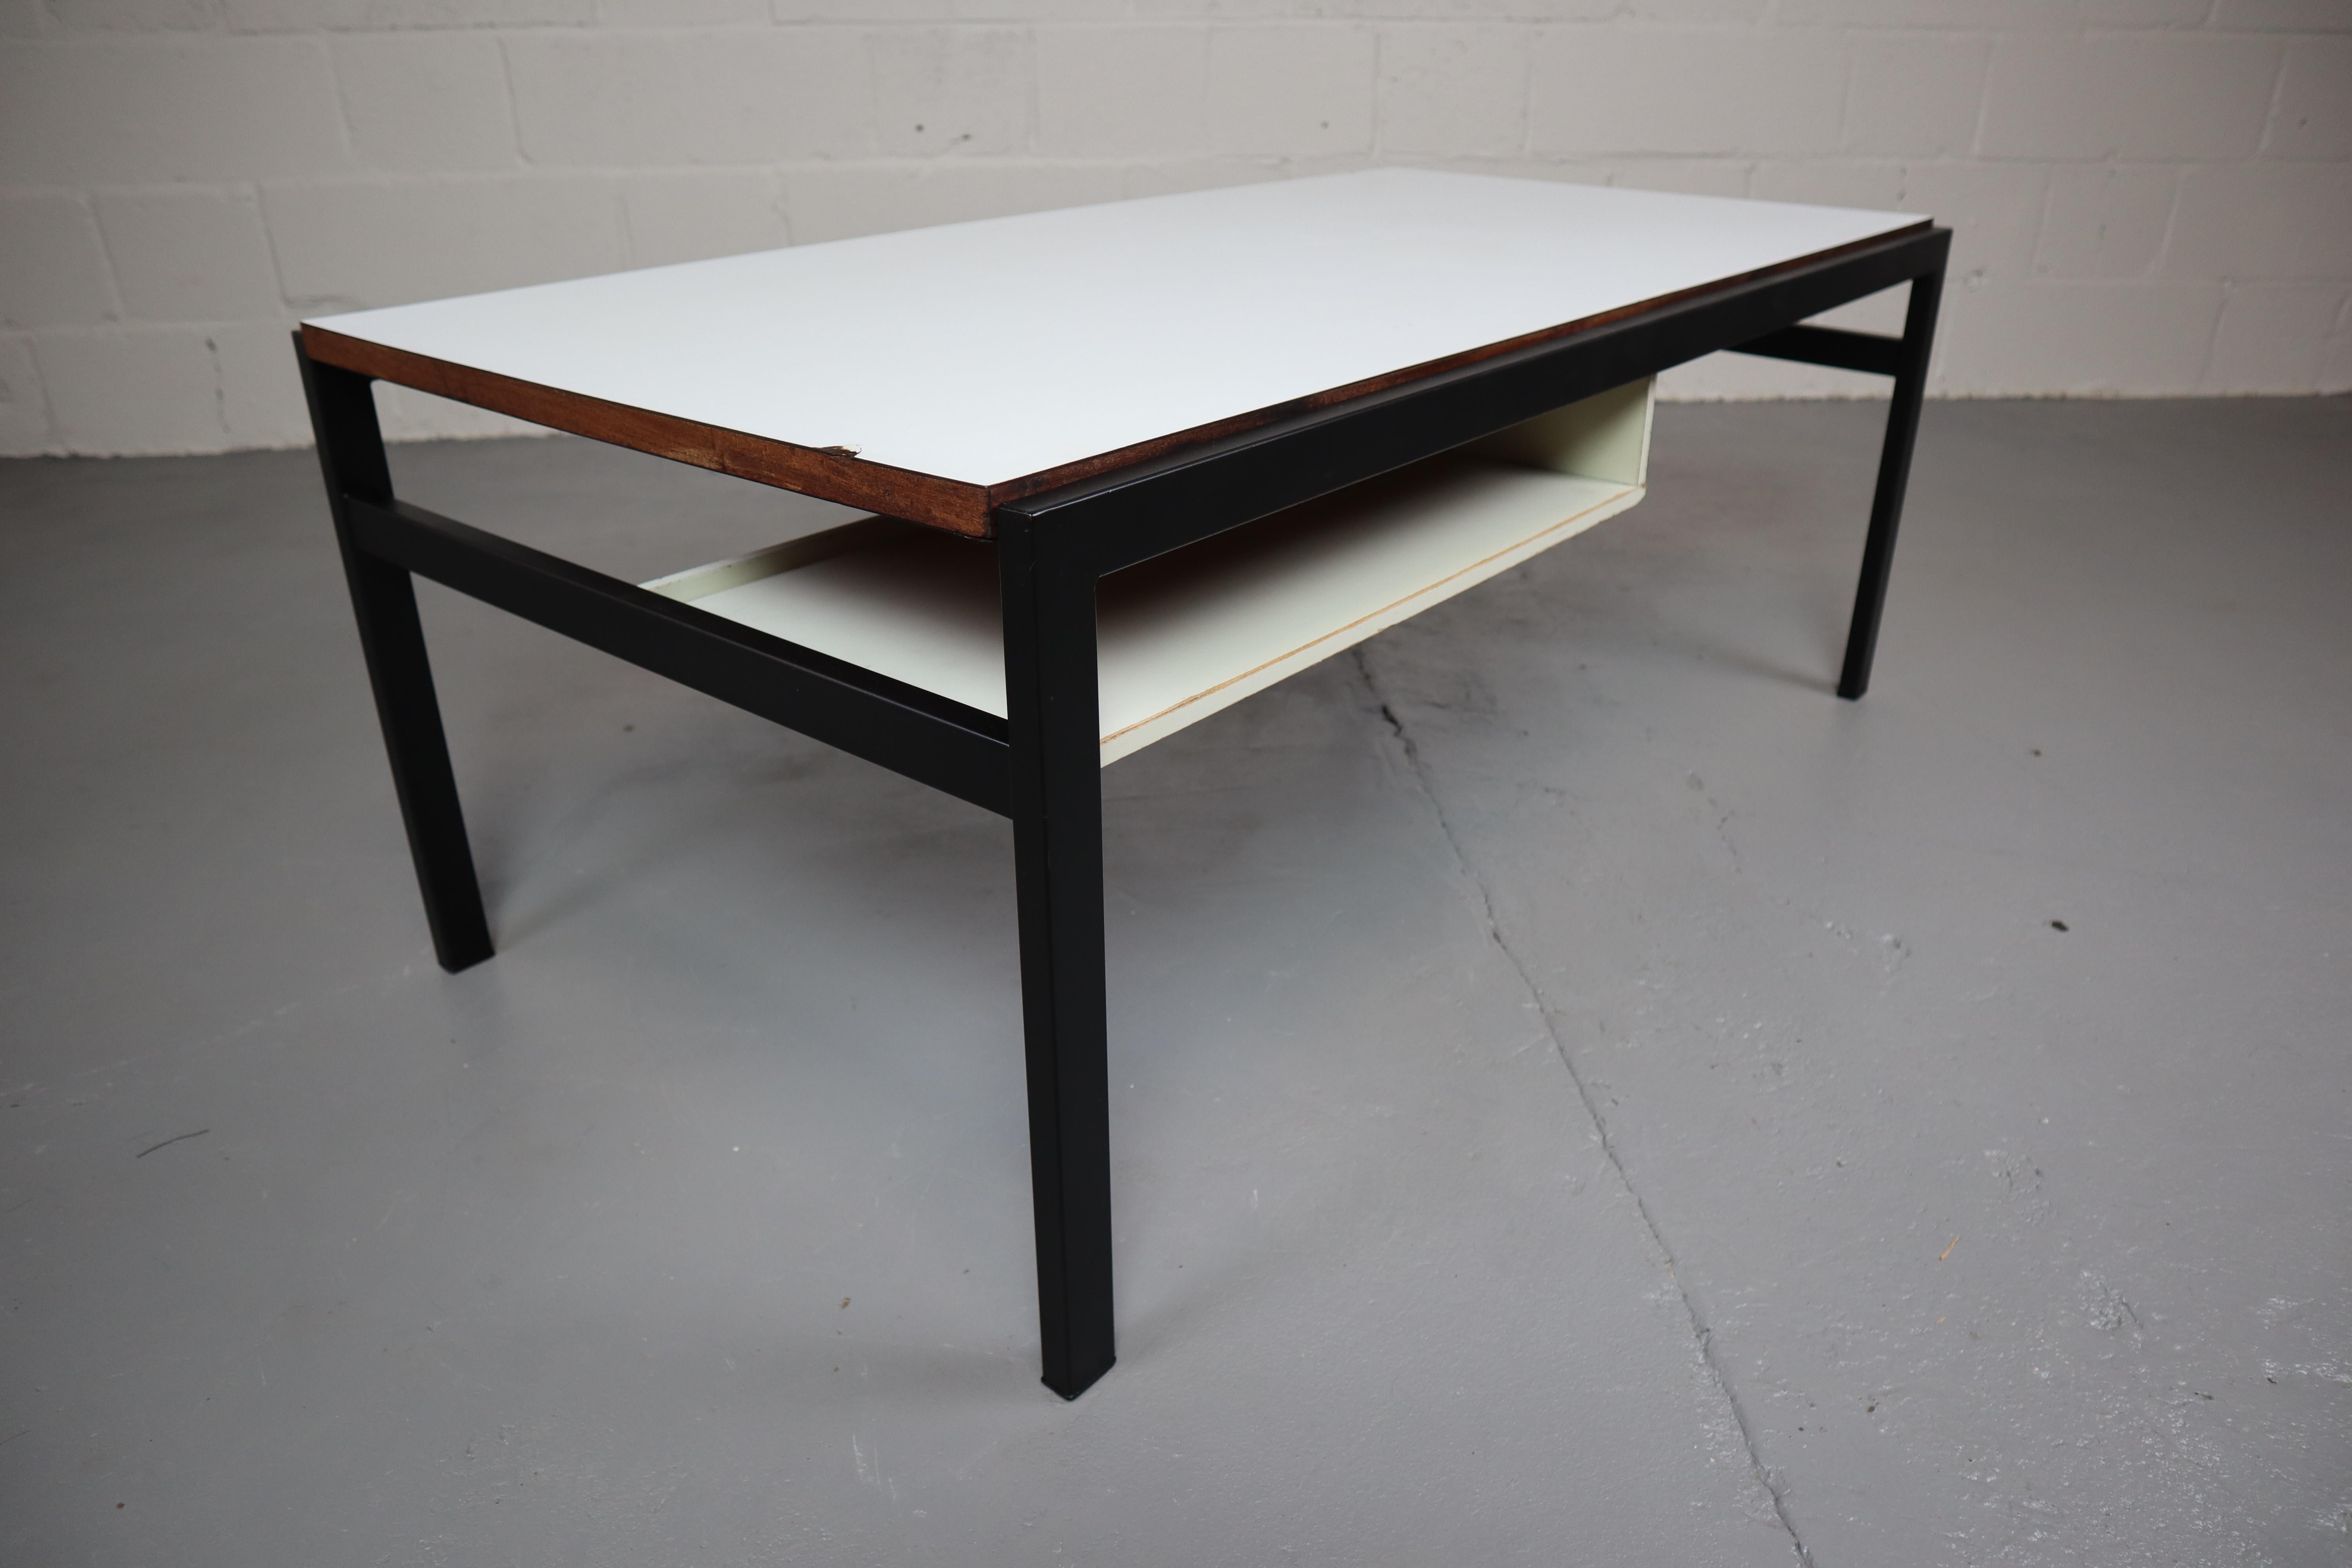 Couchtisch TU04, entworfen von Cees Braakman für Pastoe in den 1950er Jahren.
Dieser Tisch hat eine wendbare Tischplatte (Teakholz- oder Formica-Seite), schwarze Metallbeine und einen schwimmenden Zeitschriftenhalter unter der Tischplatte.
Der Tisch